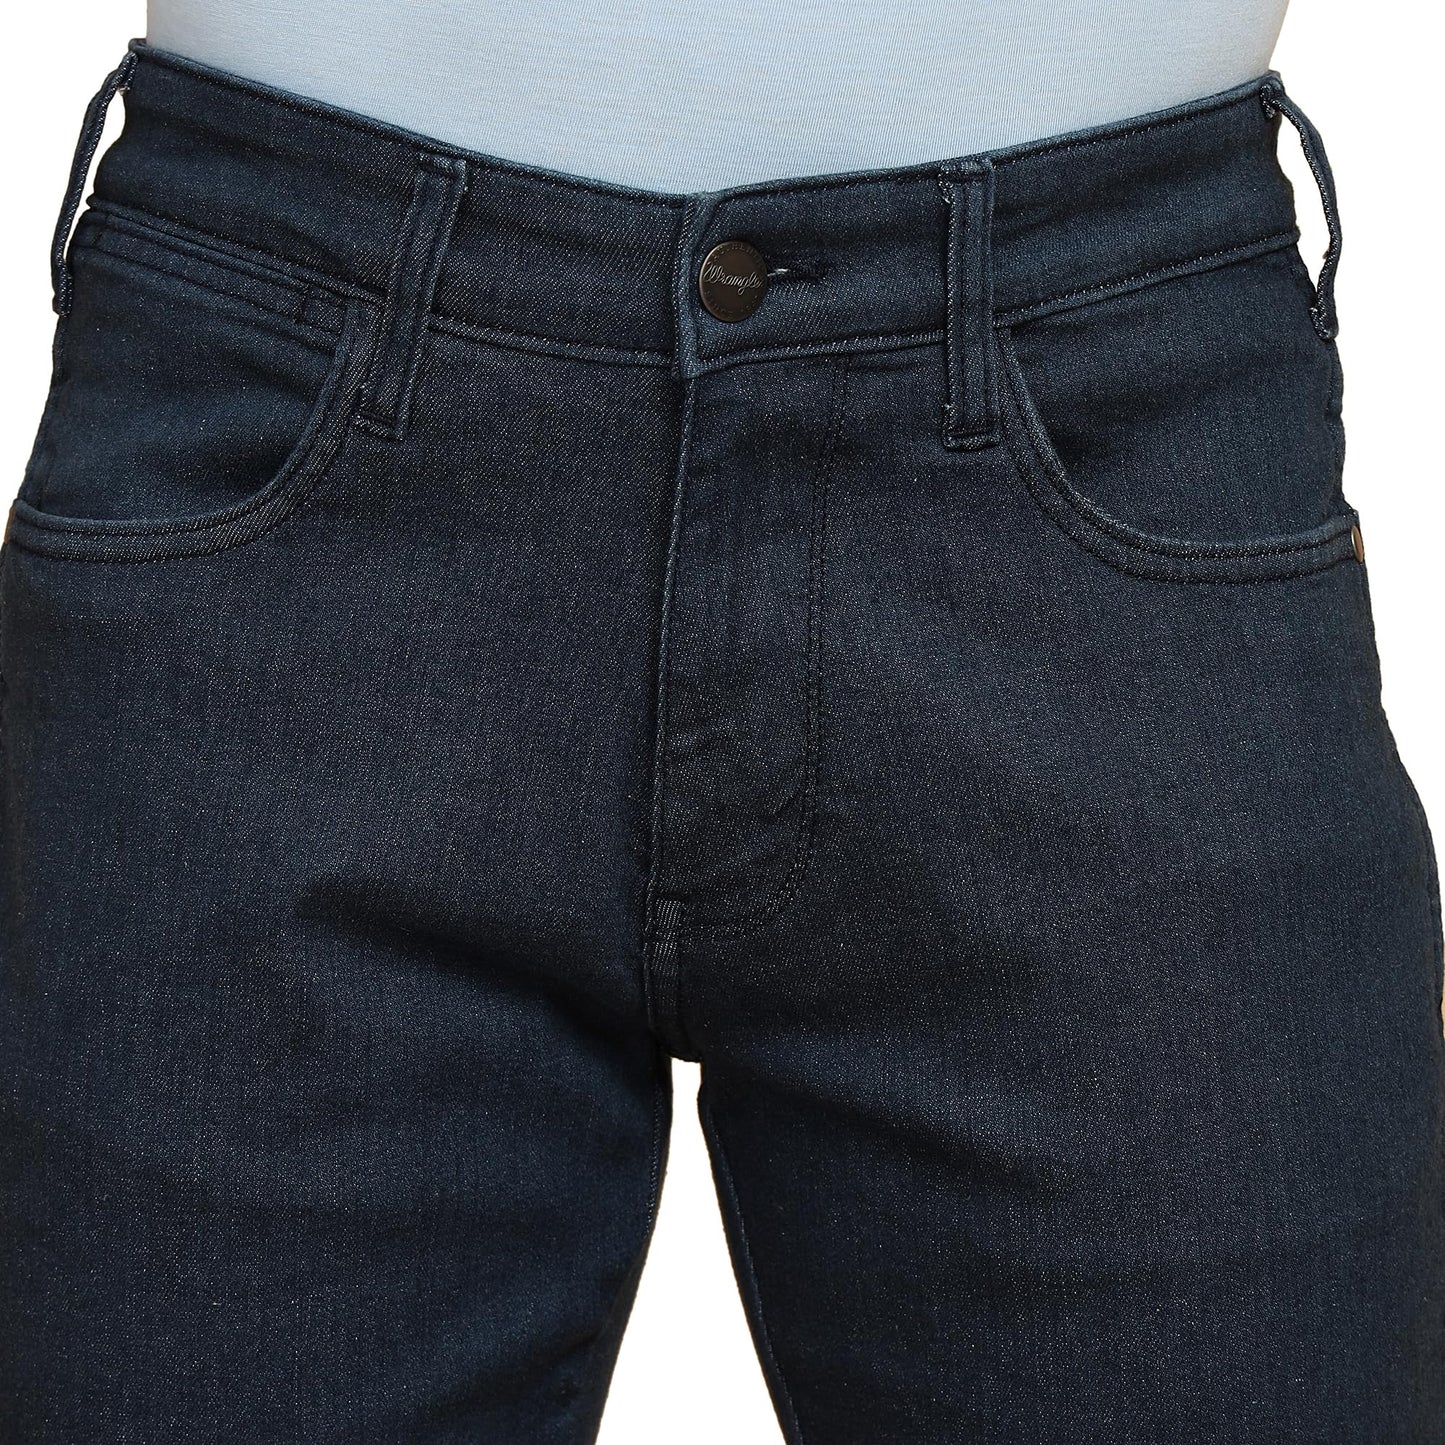 Wrangler Men's Regular Jeans (WMJN006810_Blue